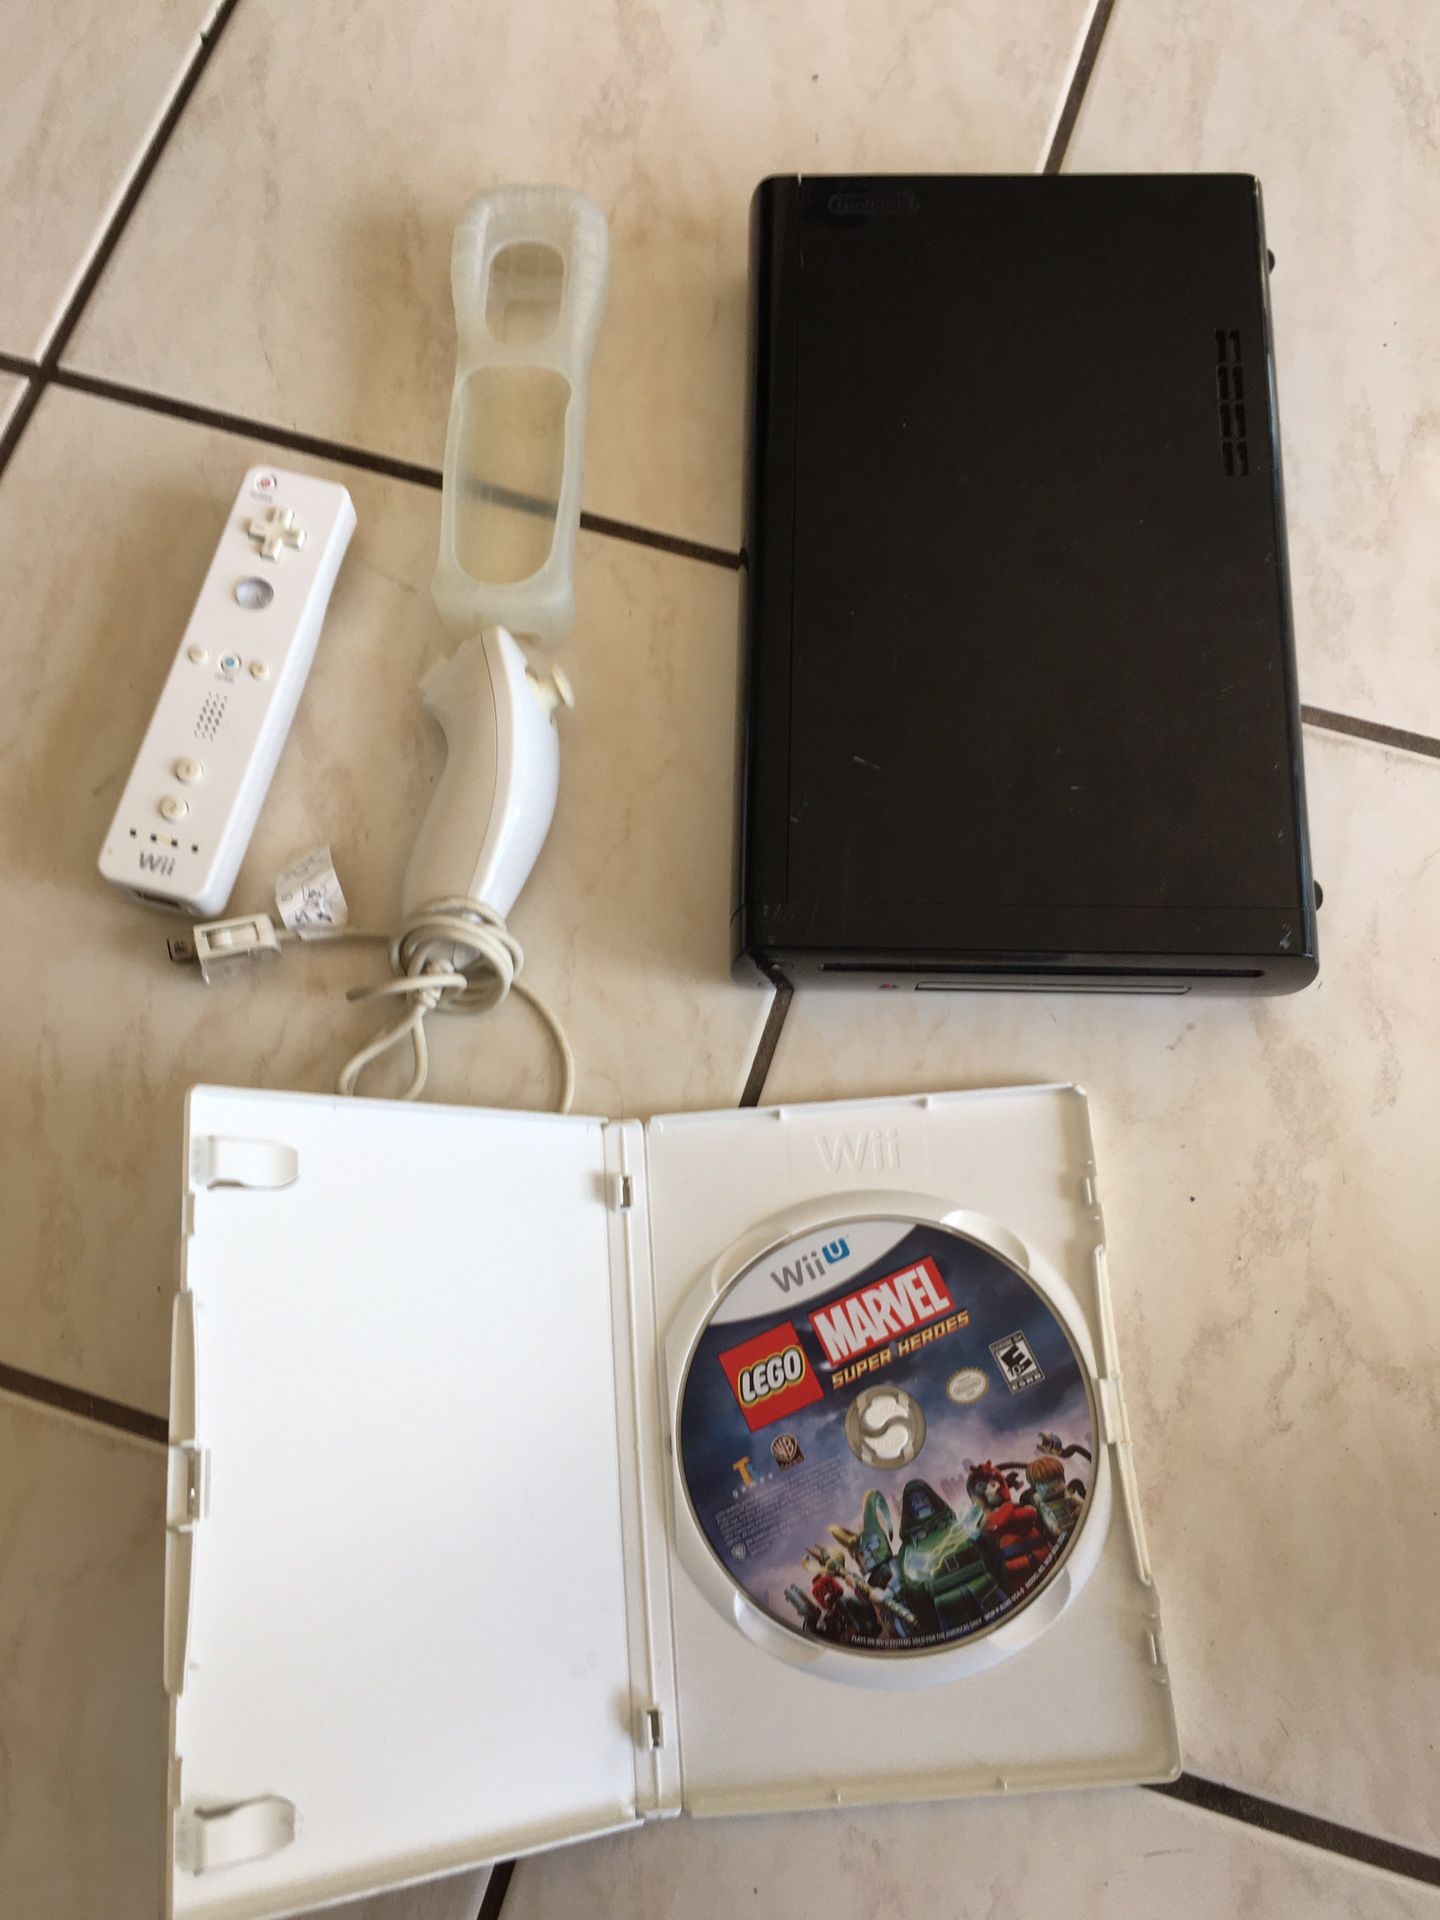 Nintendo Wii U Console Only (No cords), 1 remote, 1 silicone remote cover, 1 nunchuck remote, 1 Game